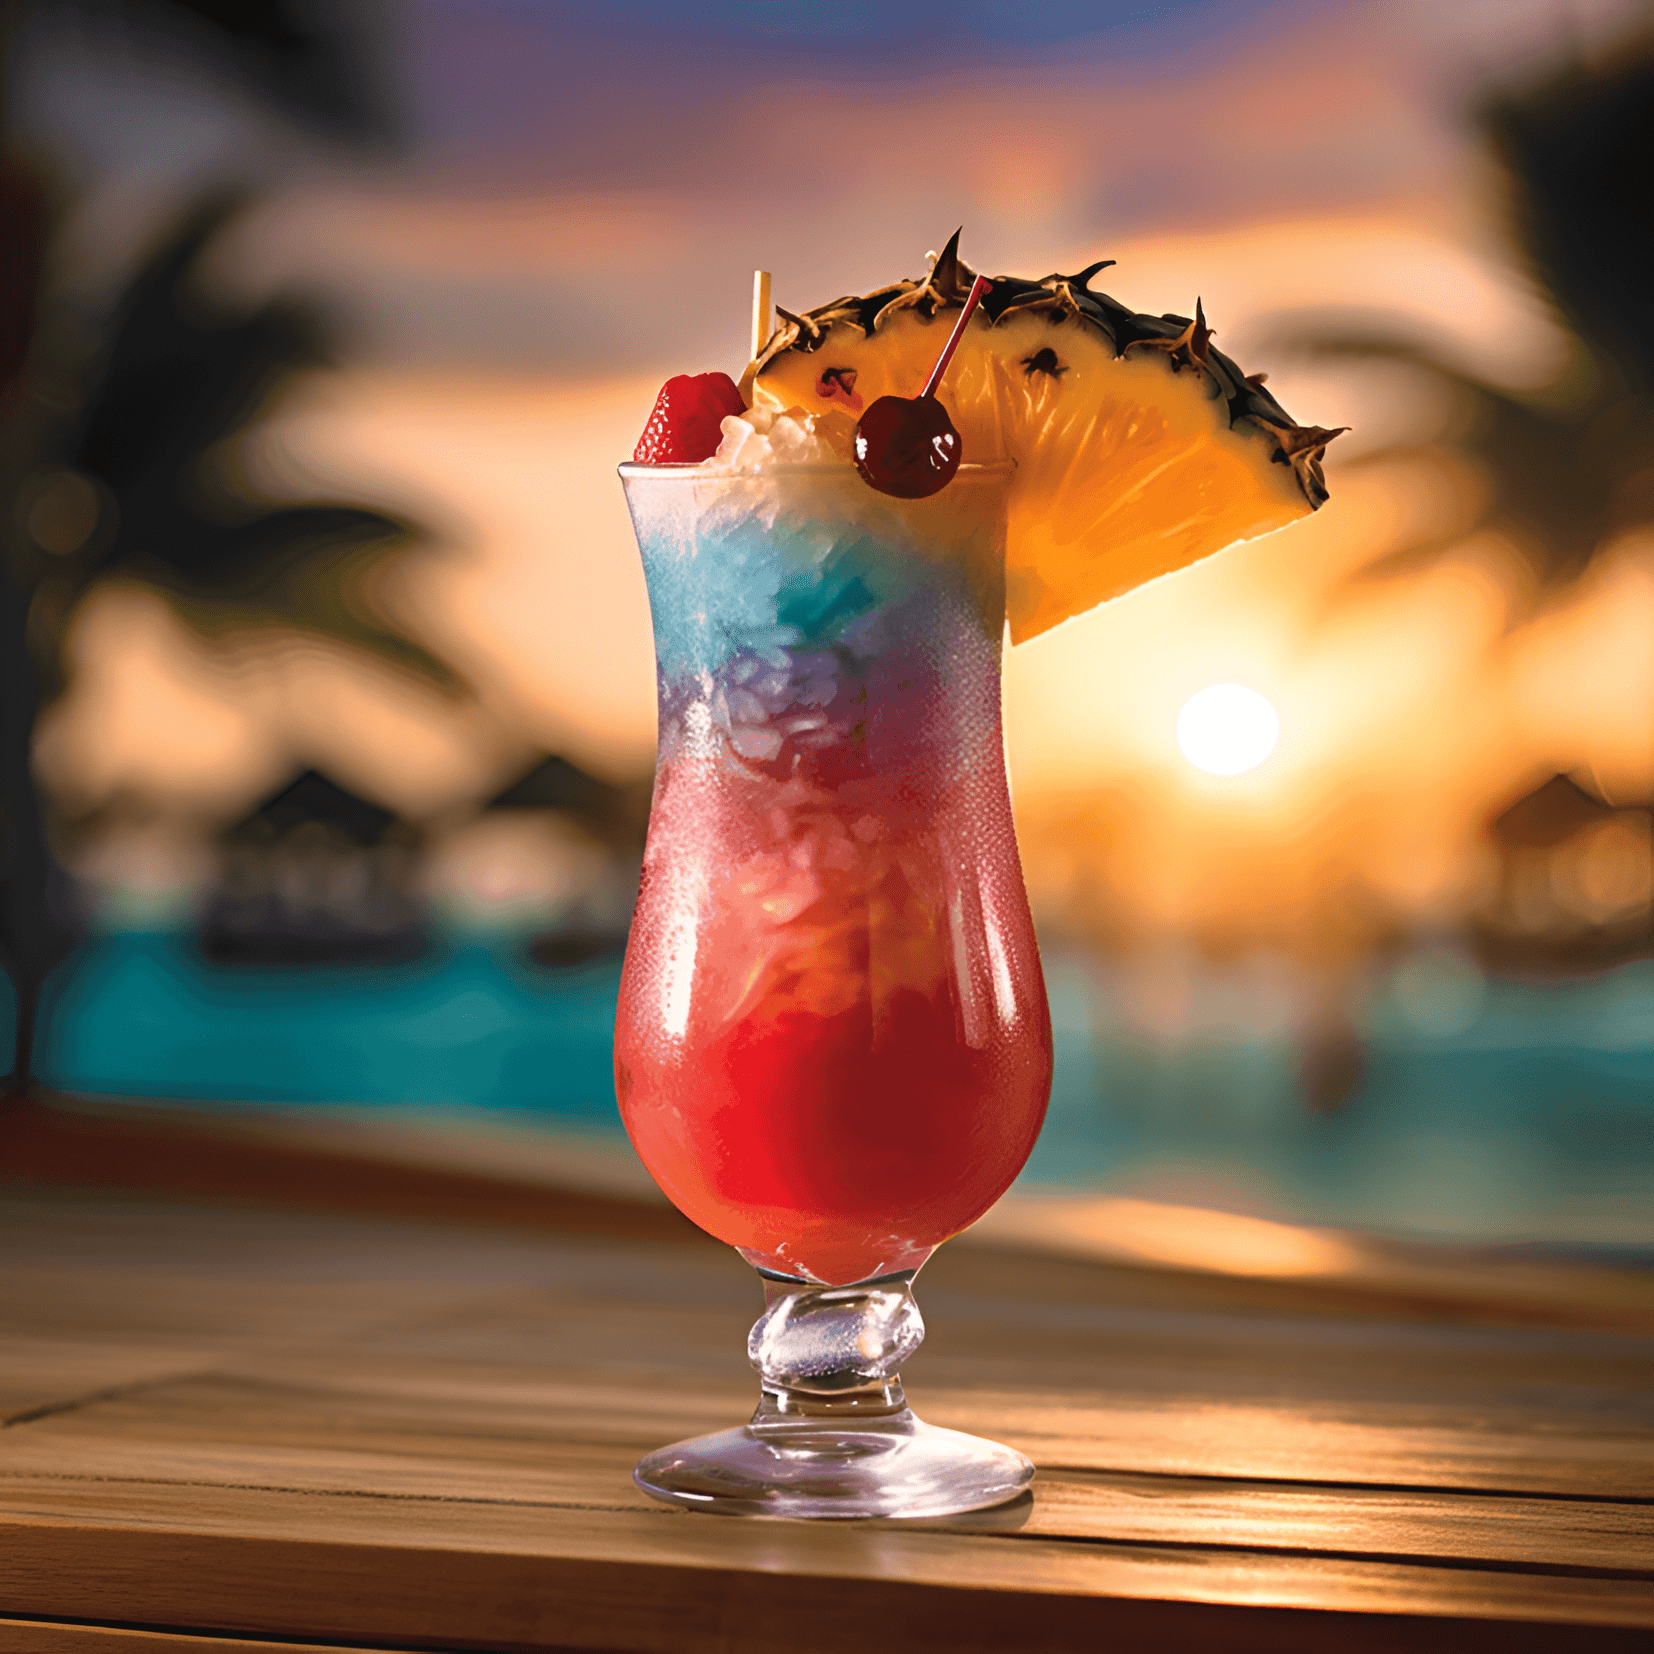 Tahitiano Cóctel Receta - El cóctel tahitiano es una deliciosa combinación de sabores dulces, ácidos y afrutados. Tiene un sabor refrescante con un toque de acidez tropical. La bebida es ligera y fácil de beber, lo que la hace perfecta para los días cálidos de verano o para relajarse en la playa.